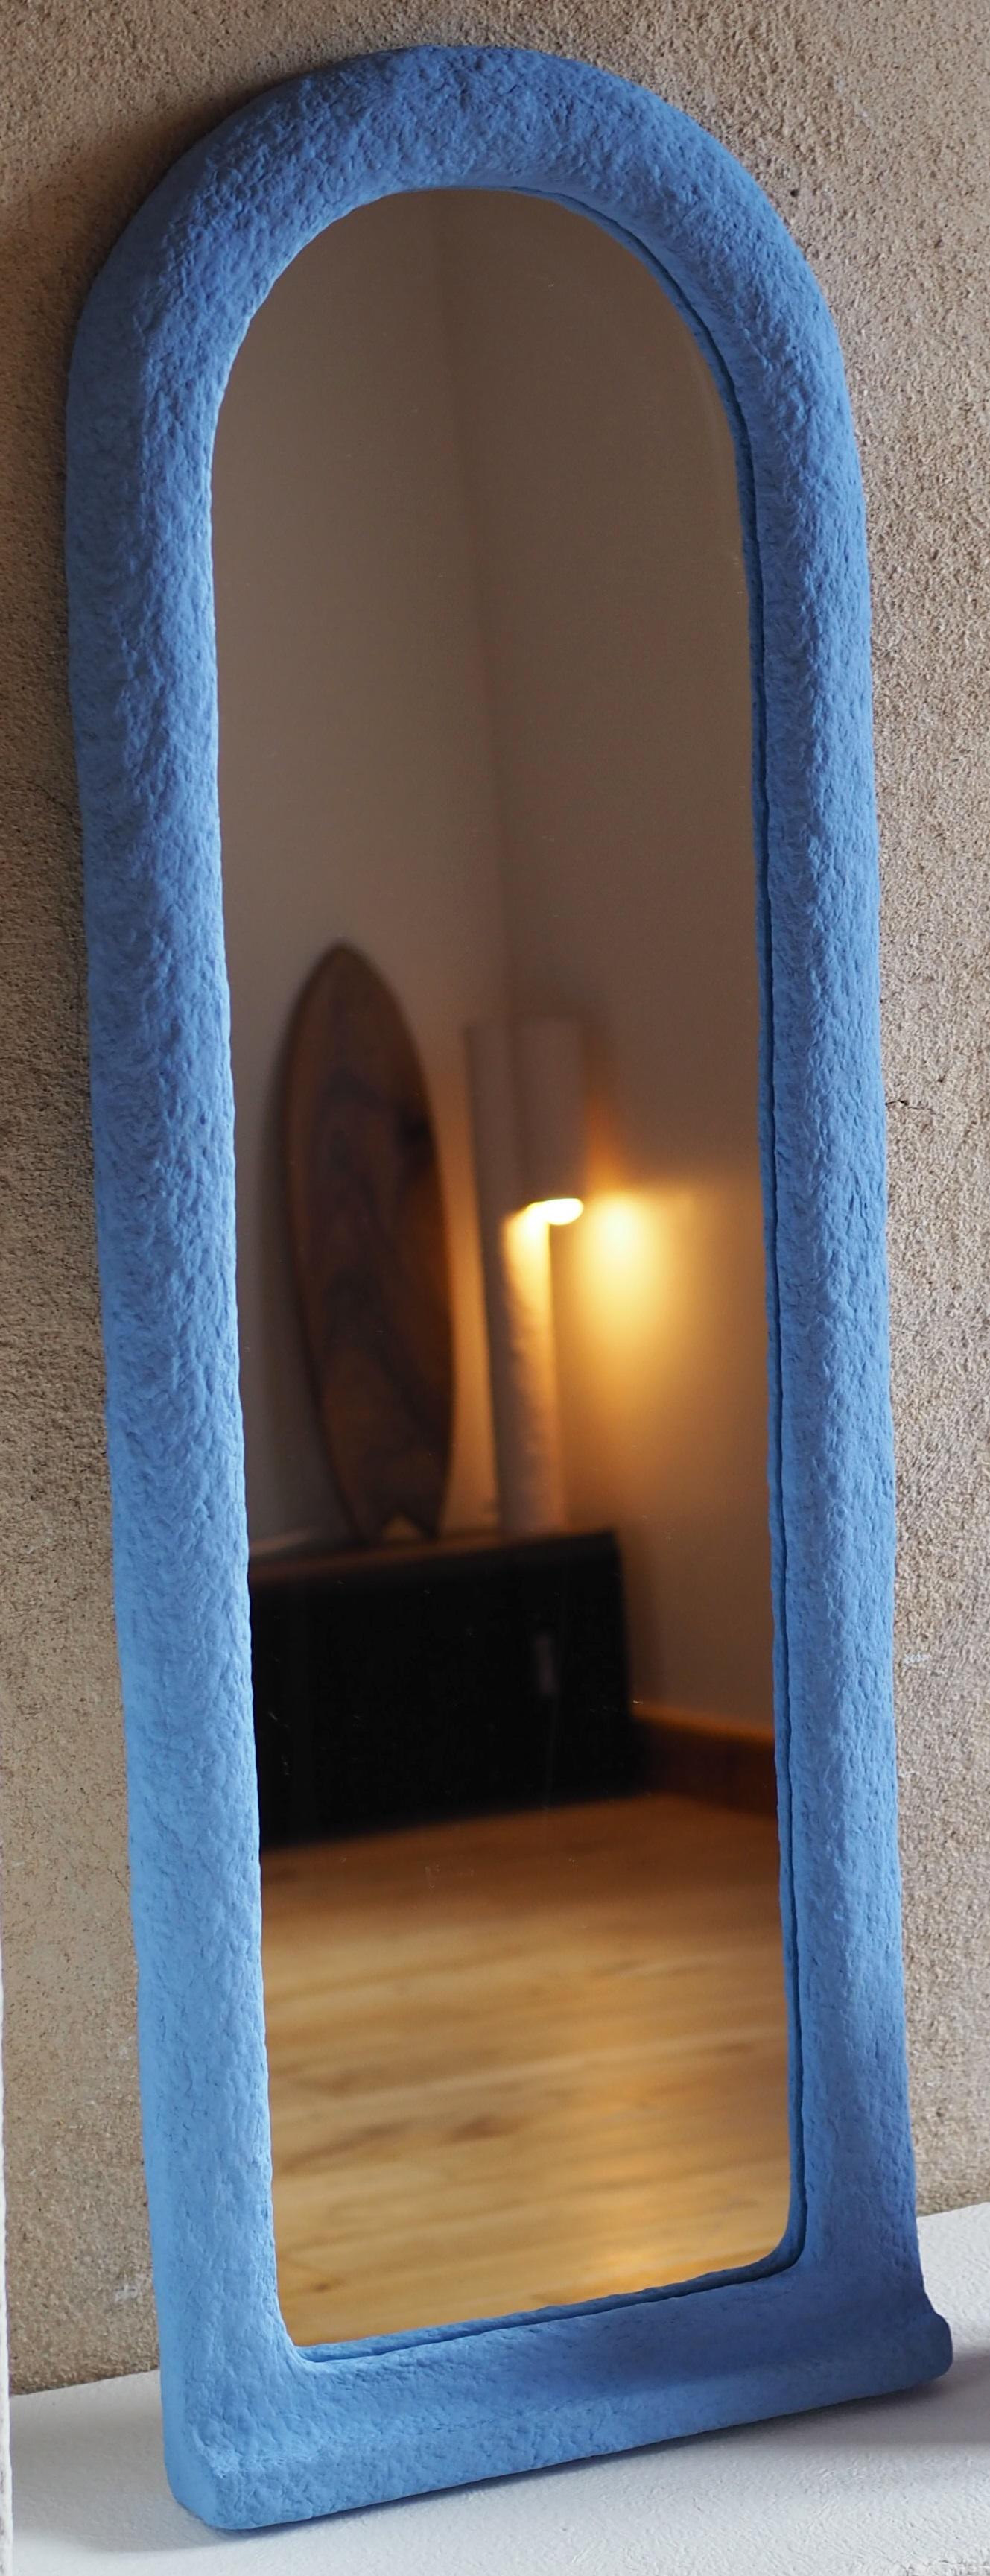 Lykos-Spiegel von Pauline Pietri
Einzigartiges Stück.
Abmessungen: T 92 x B 70 x H 50 cm. 
MATERIALIEN: Papierzellstoff, Spiegel, Farbe auf Biobasis.

Ökologisch gestalteter Spiegel auf der Basis von Zellstoff - Pappe, Papier, Zeitungen usw. Die